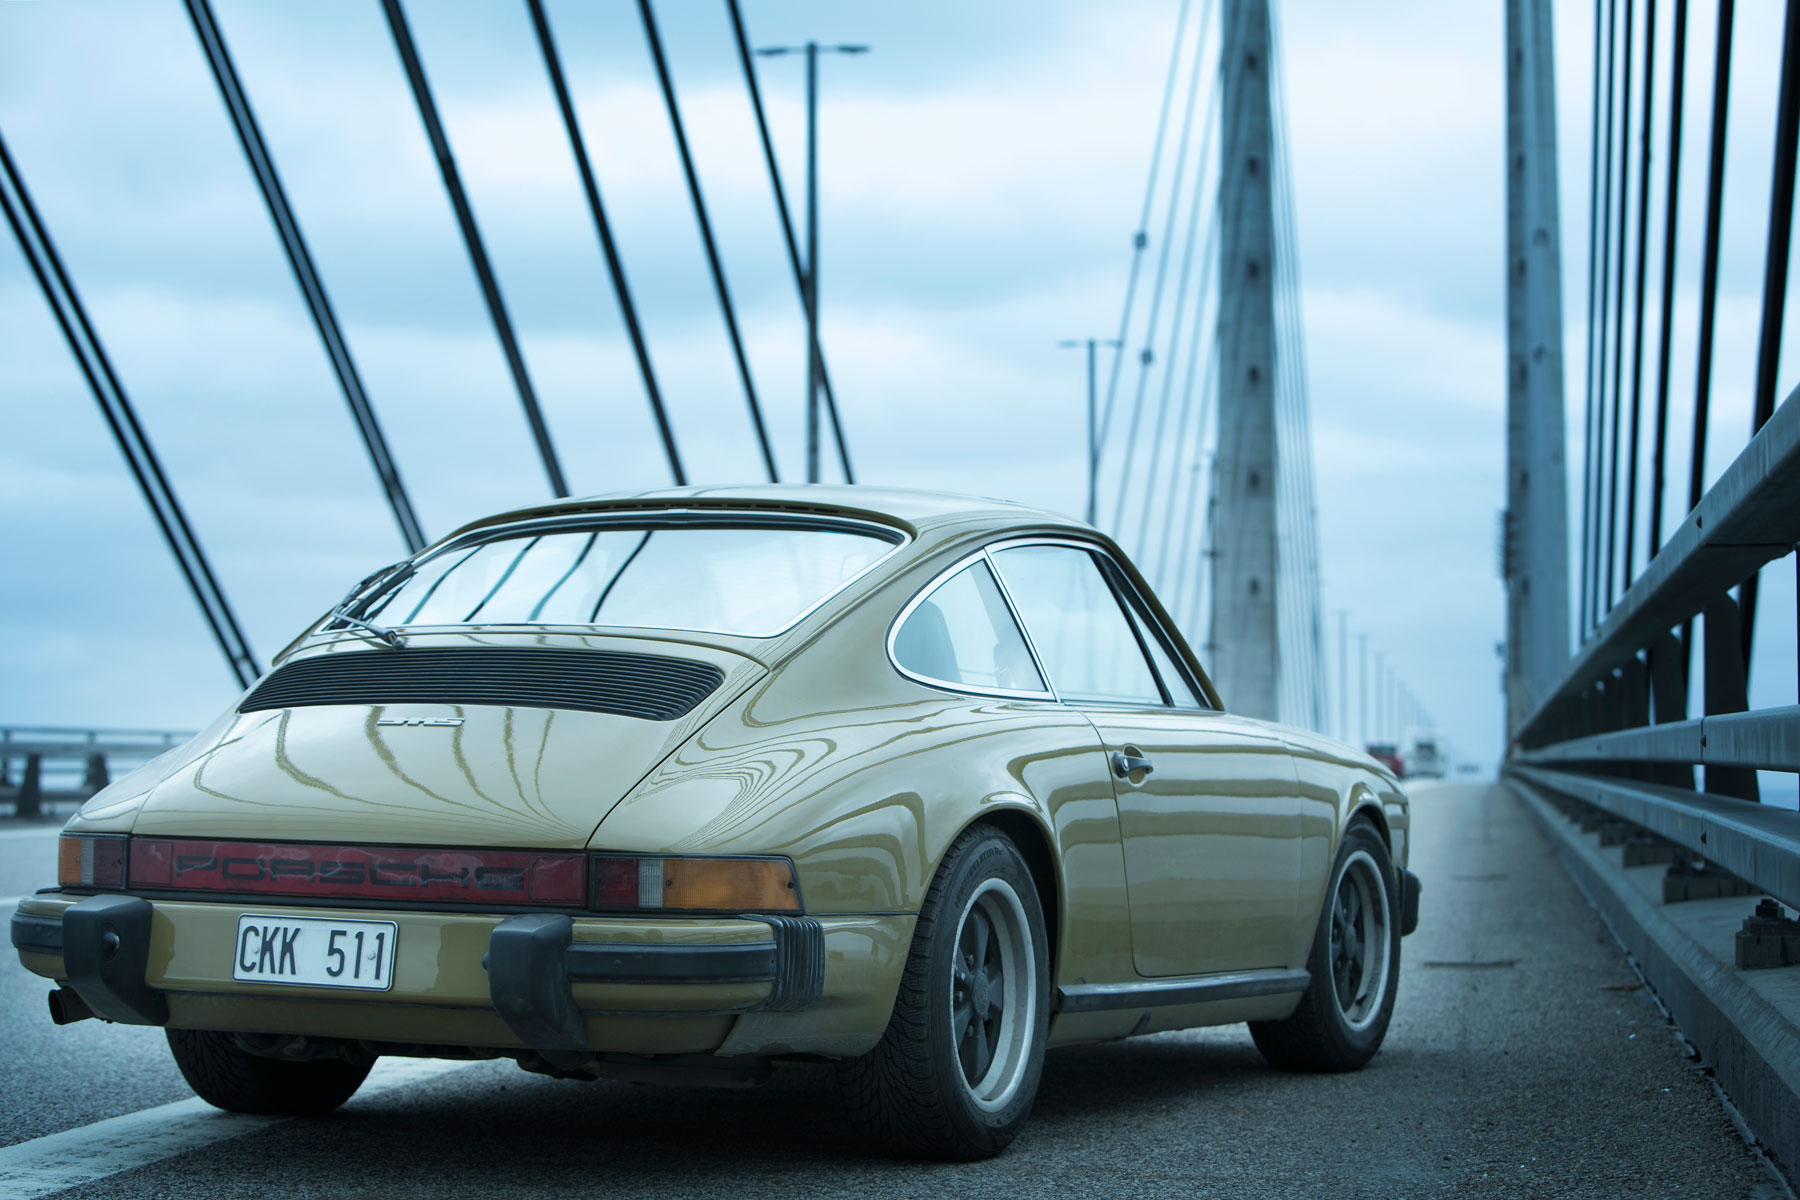 geleidelijk Winderig Vel The Bridge' Porsche 911 sells for £120,000 over estimate